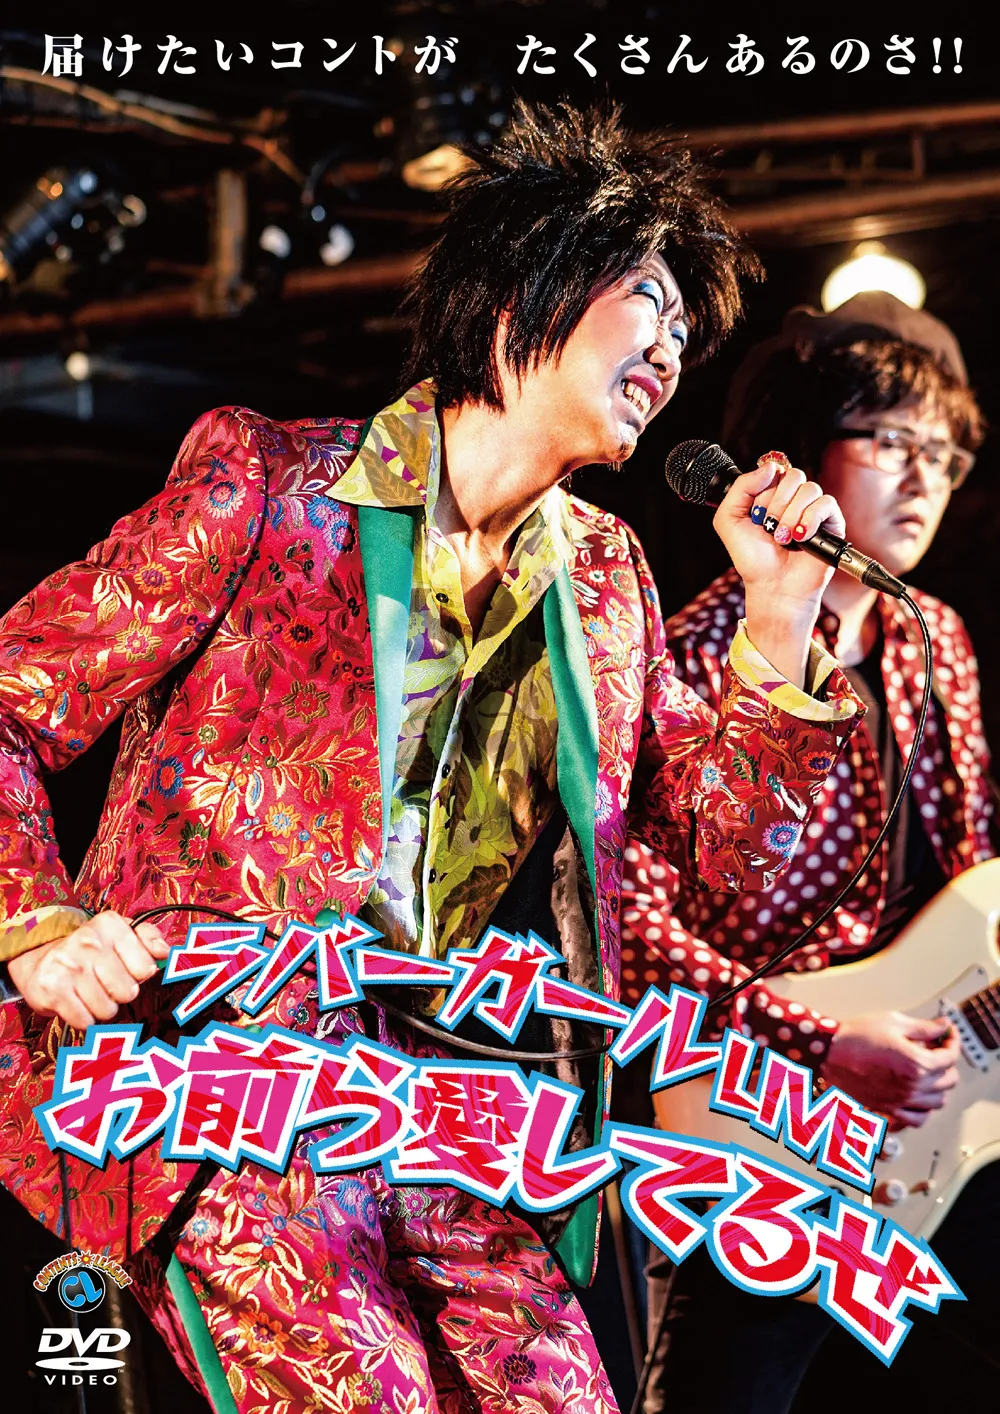 DVD「ラバーガールLIVE『お前ら愛してるぜ』」は7月24日(水)発売